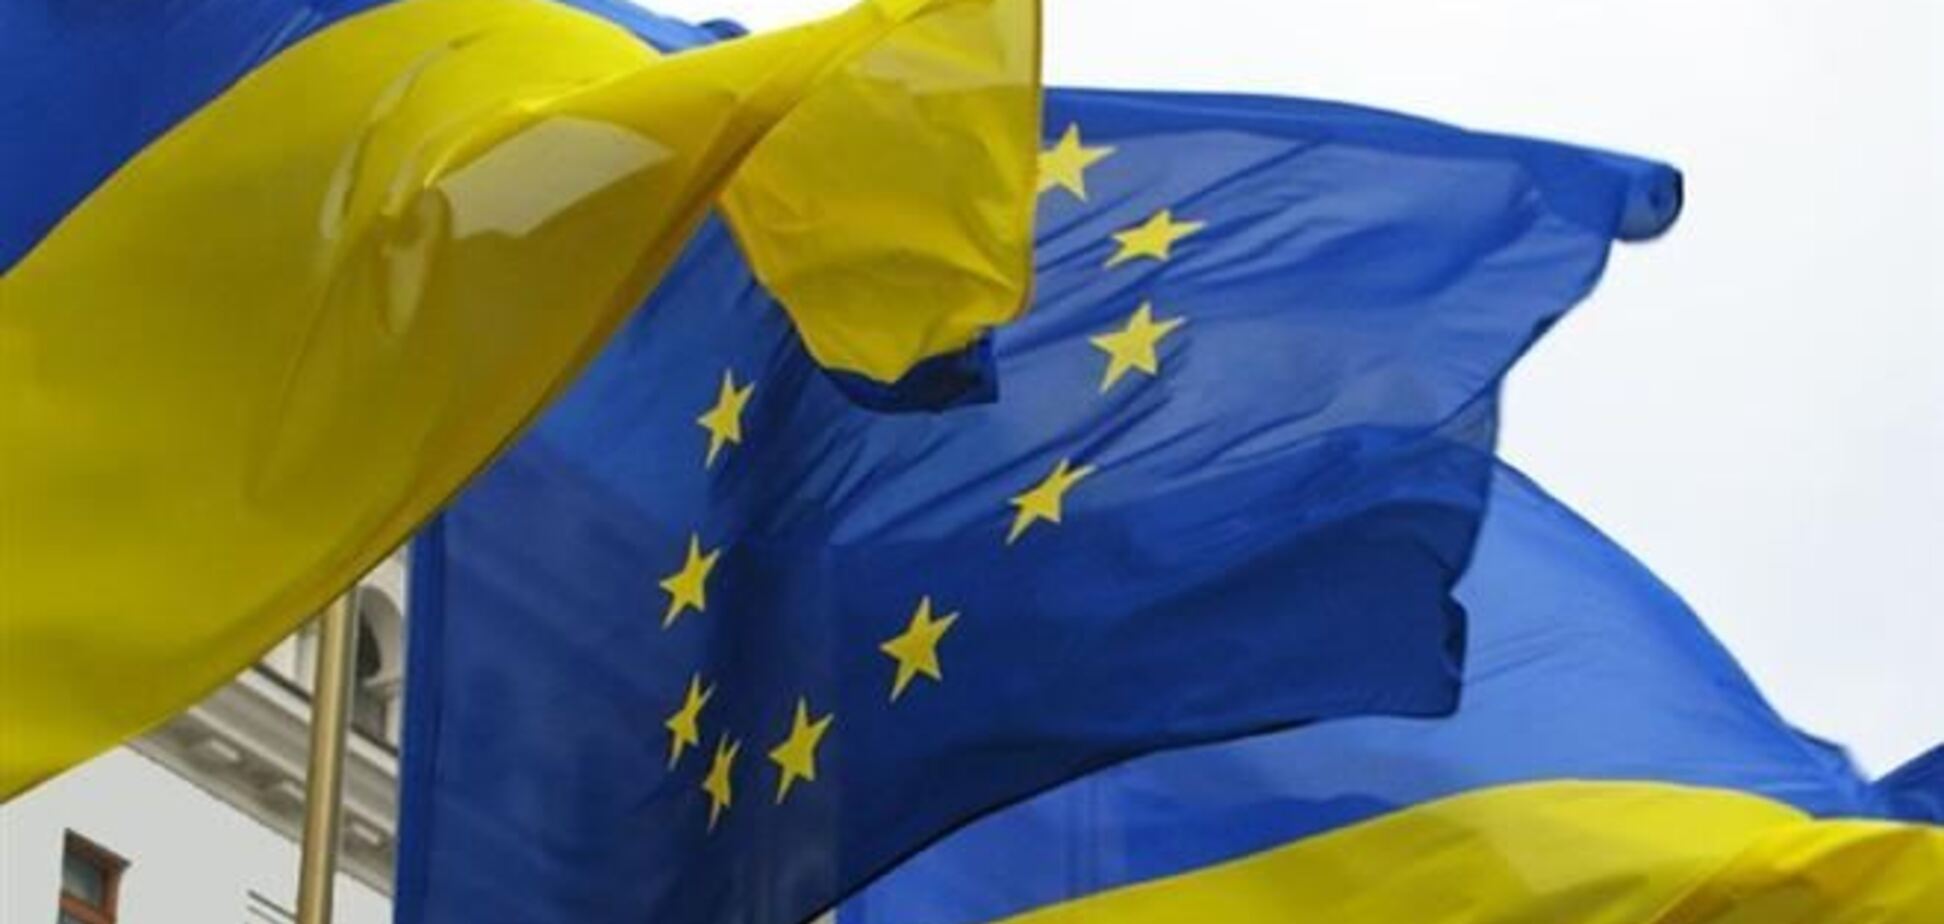 ПР: Польша с пониманием относится к возможной 'паузе' в евроинтеграции Украины